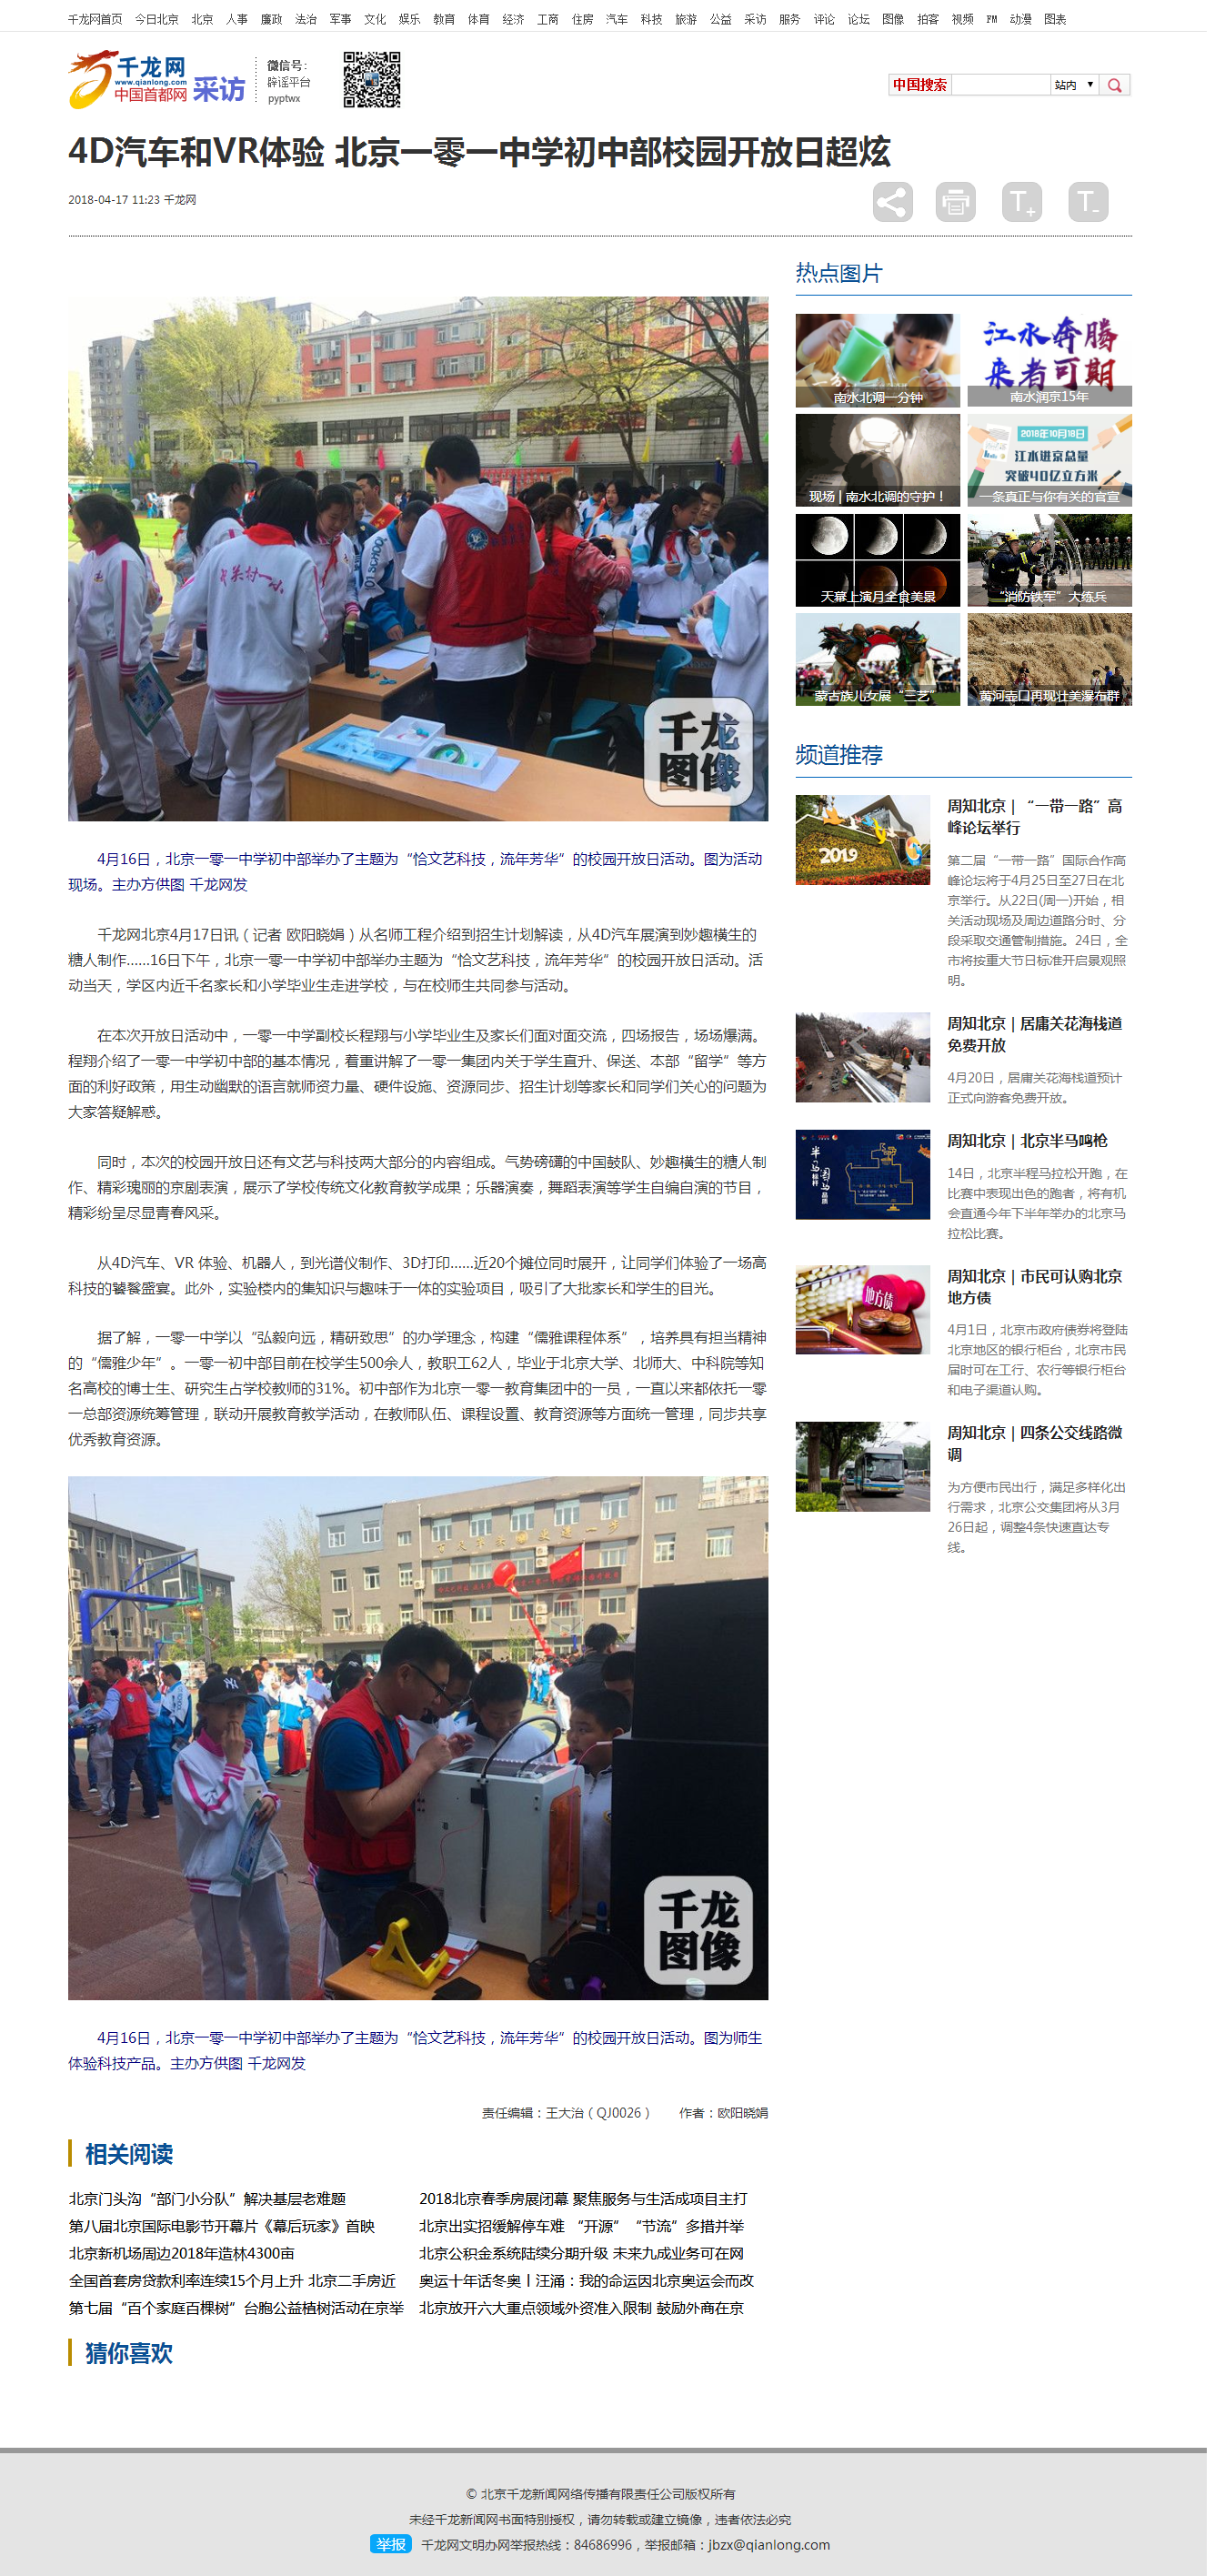 4D汽车和VR体验 北京一零一中学初中部校园开放日超炫-千龙网·中国首都网.png